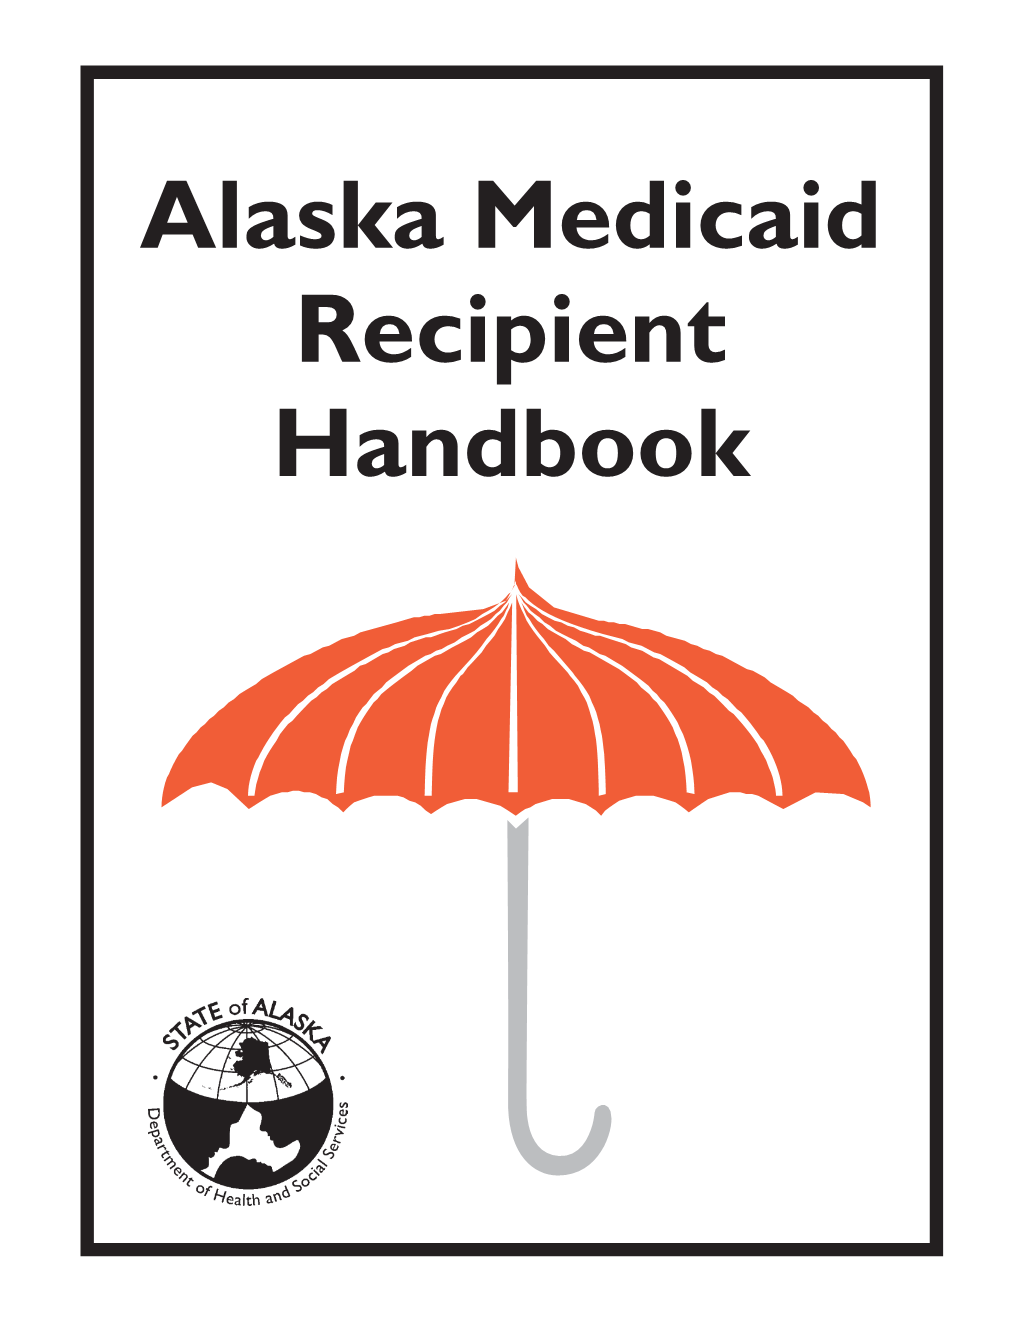 Alaska Medicaid Recipient Handbook